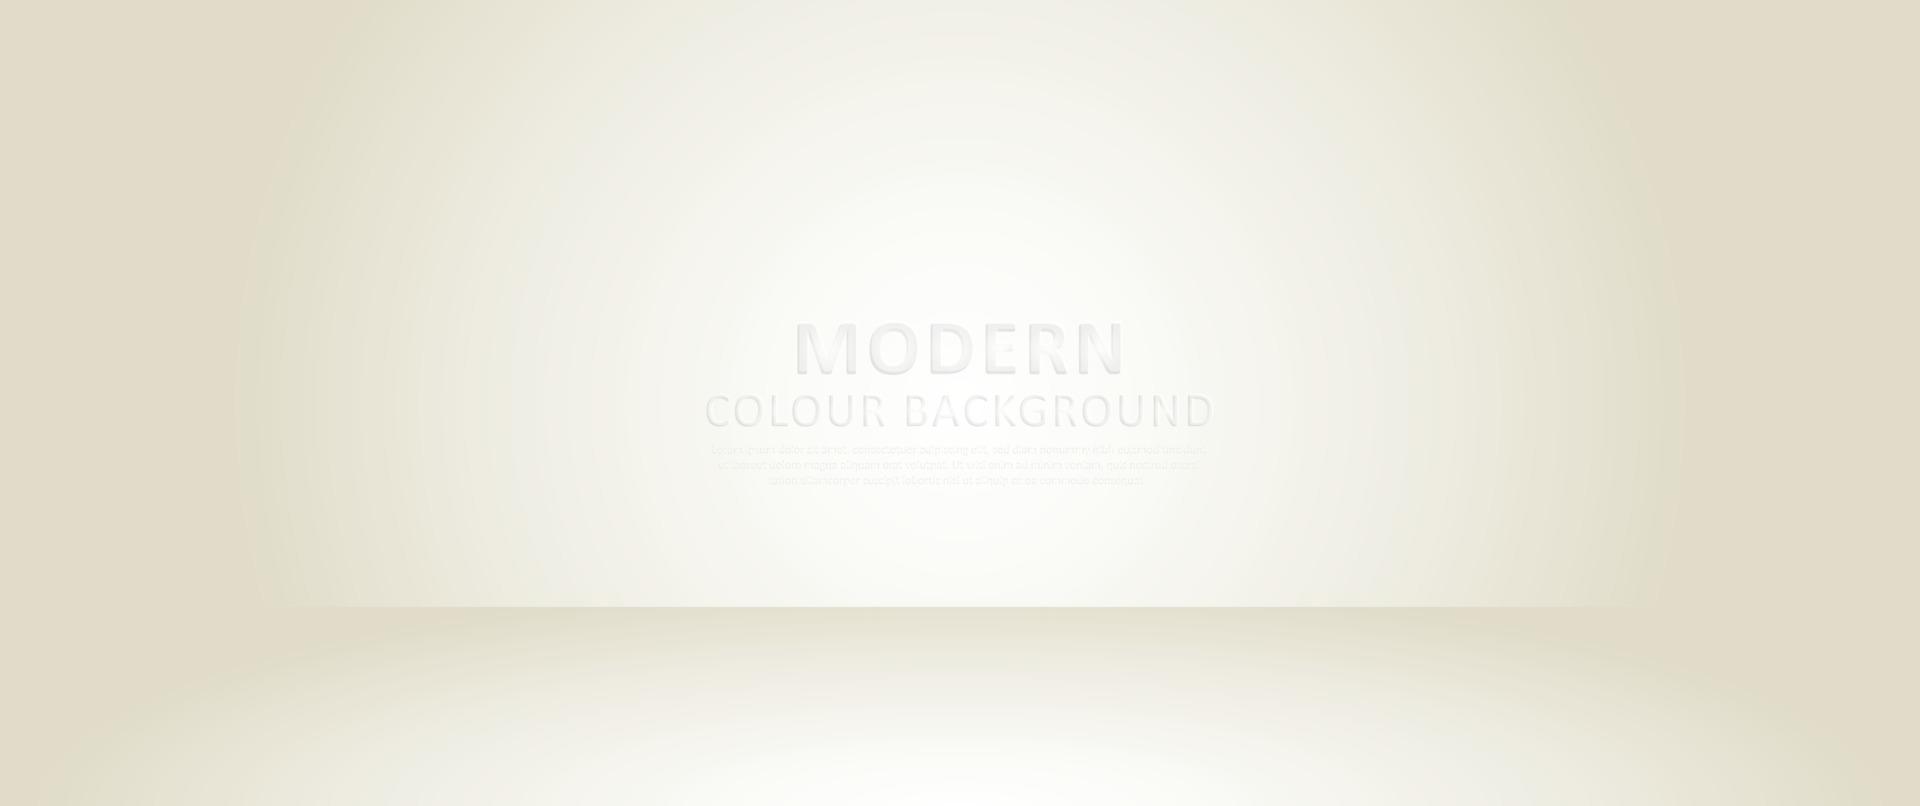 conceito criativo abstrato vetor moderno cor gradiente de fundo